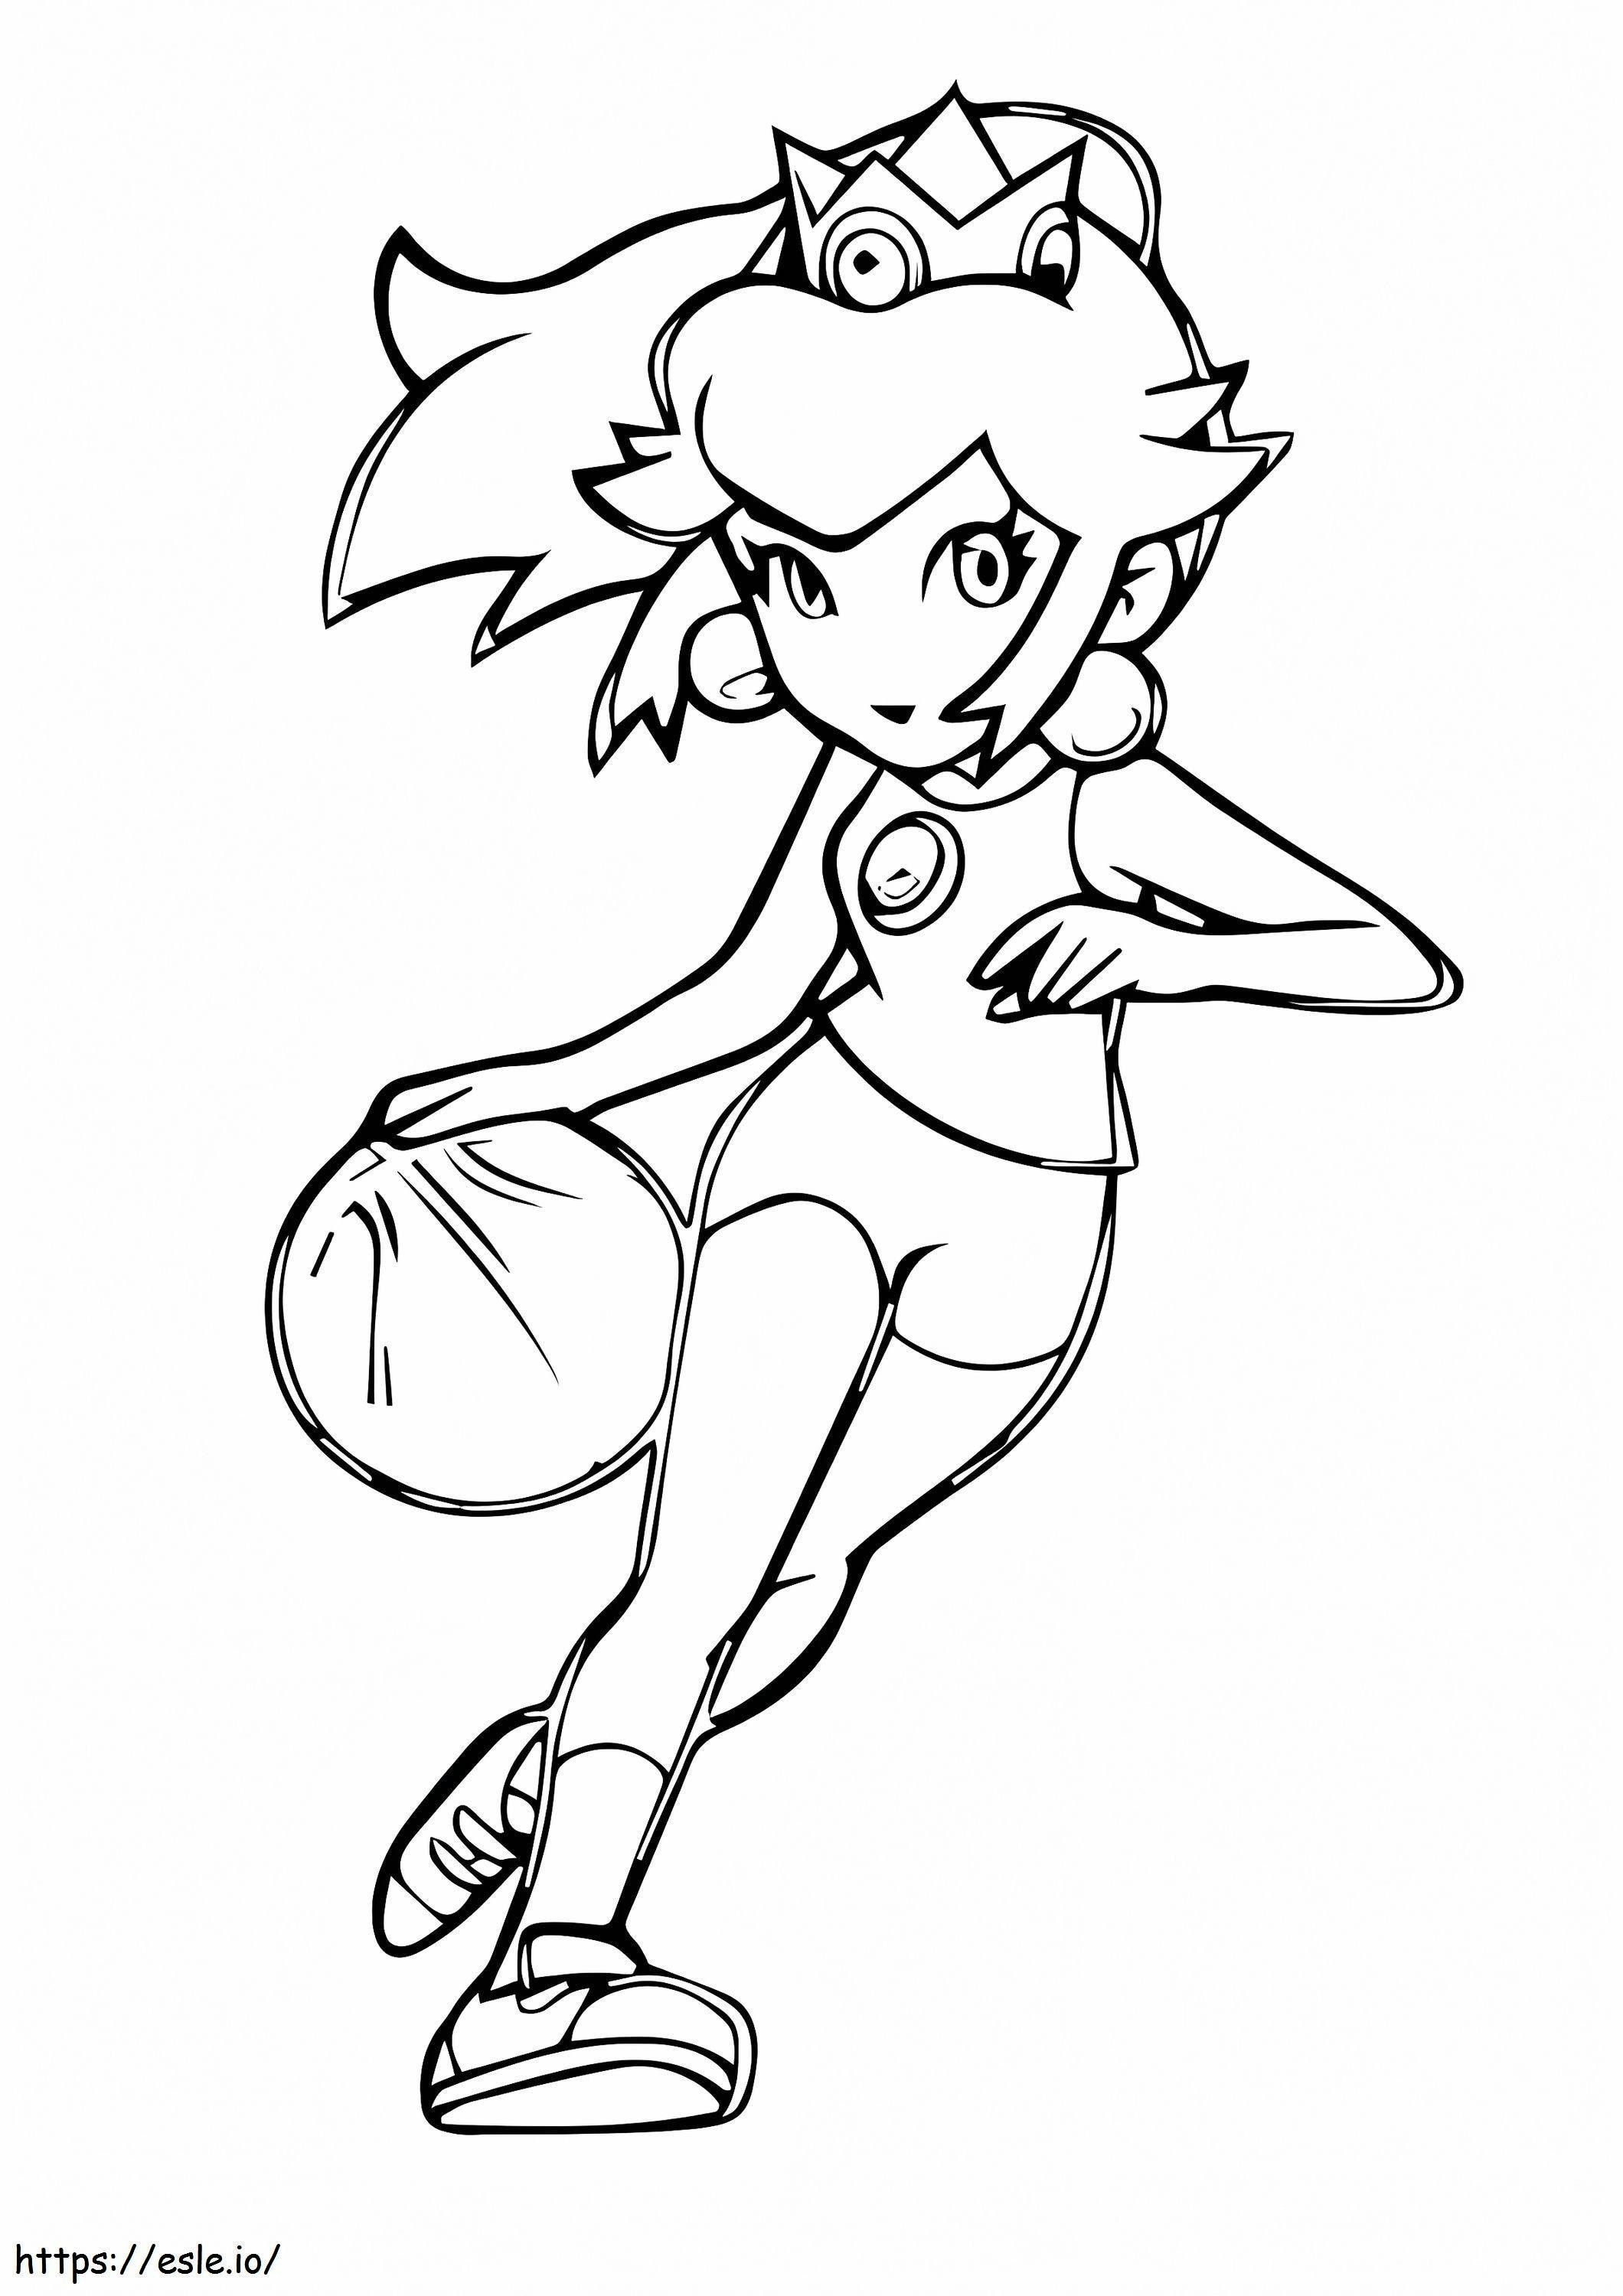 La principessa Peach gioca a basket da colorare